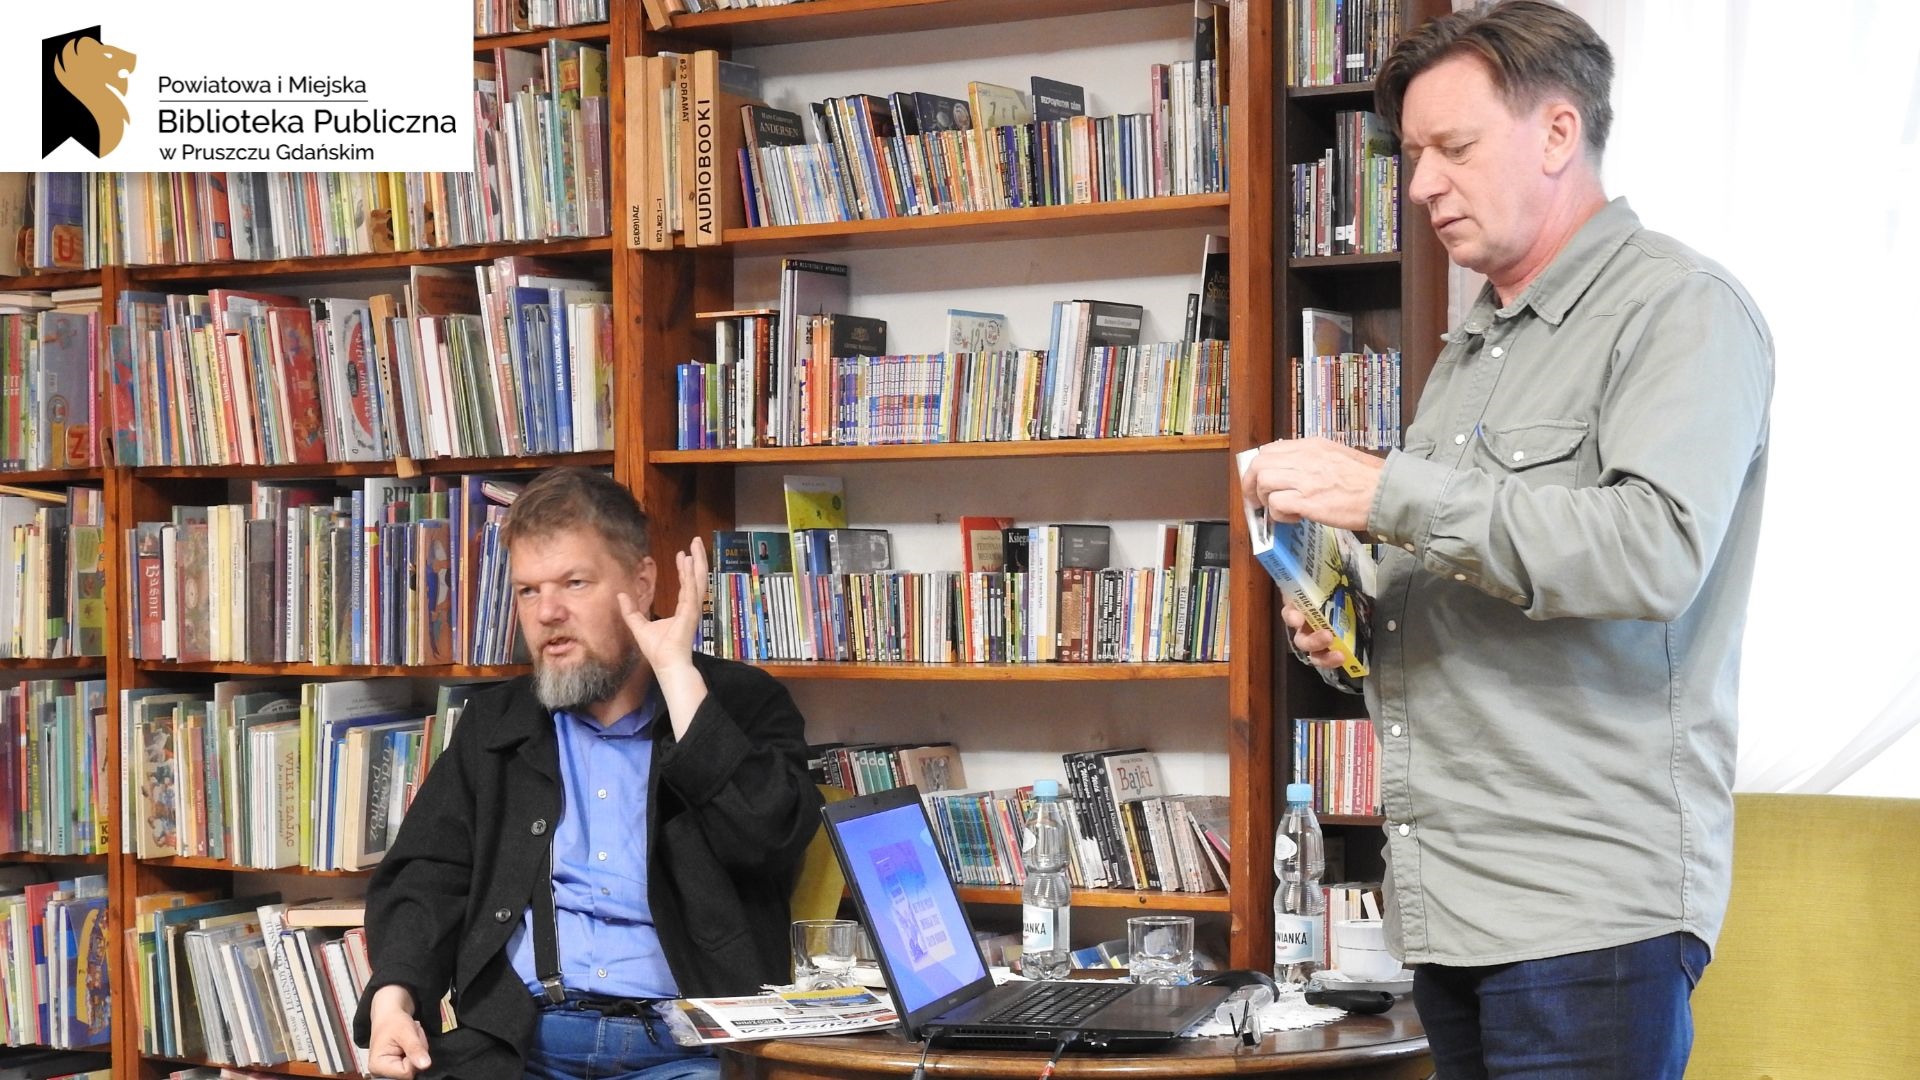 Serhyj Syniuk siedzi na fotelu z uniesioną dłonią, a Krzysztof Petek stoi trzymając książkę pt. Tysiąc bochenków. Pomiędzy nimi znajduje się stół, na którym jest włączony laptop, dwie butelki wody mineralnej, dwie szklanki oraz gazeta. W tle regały z książkami.